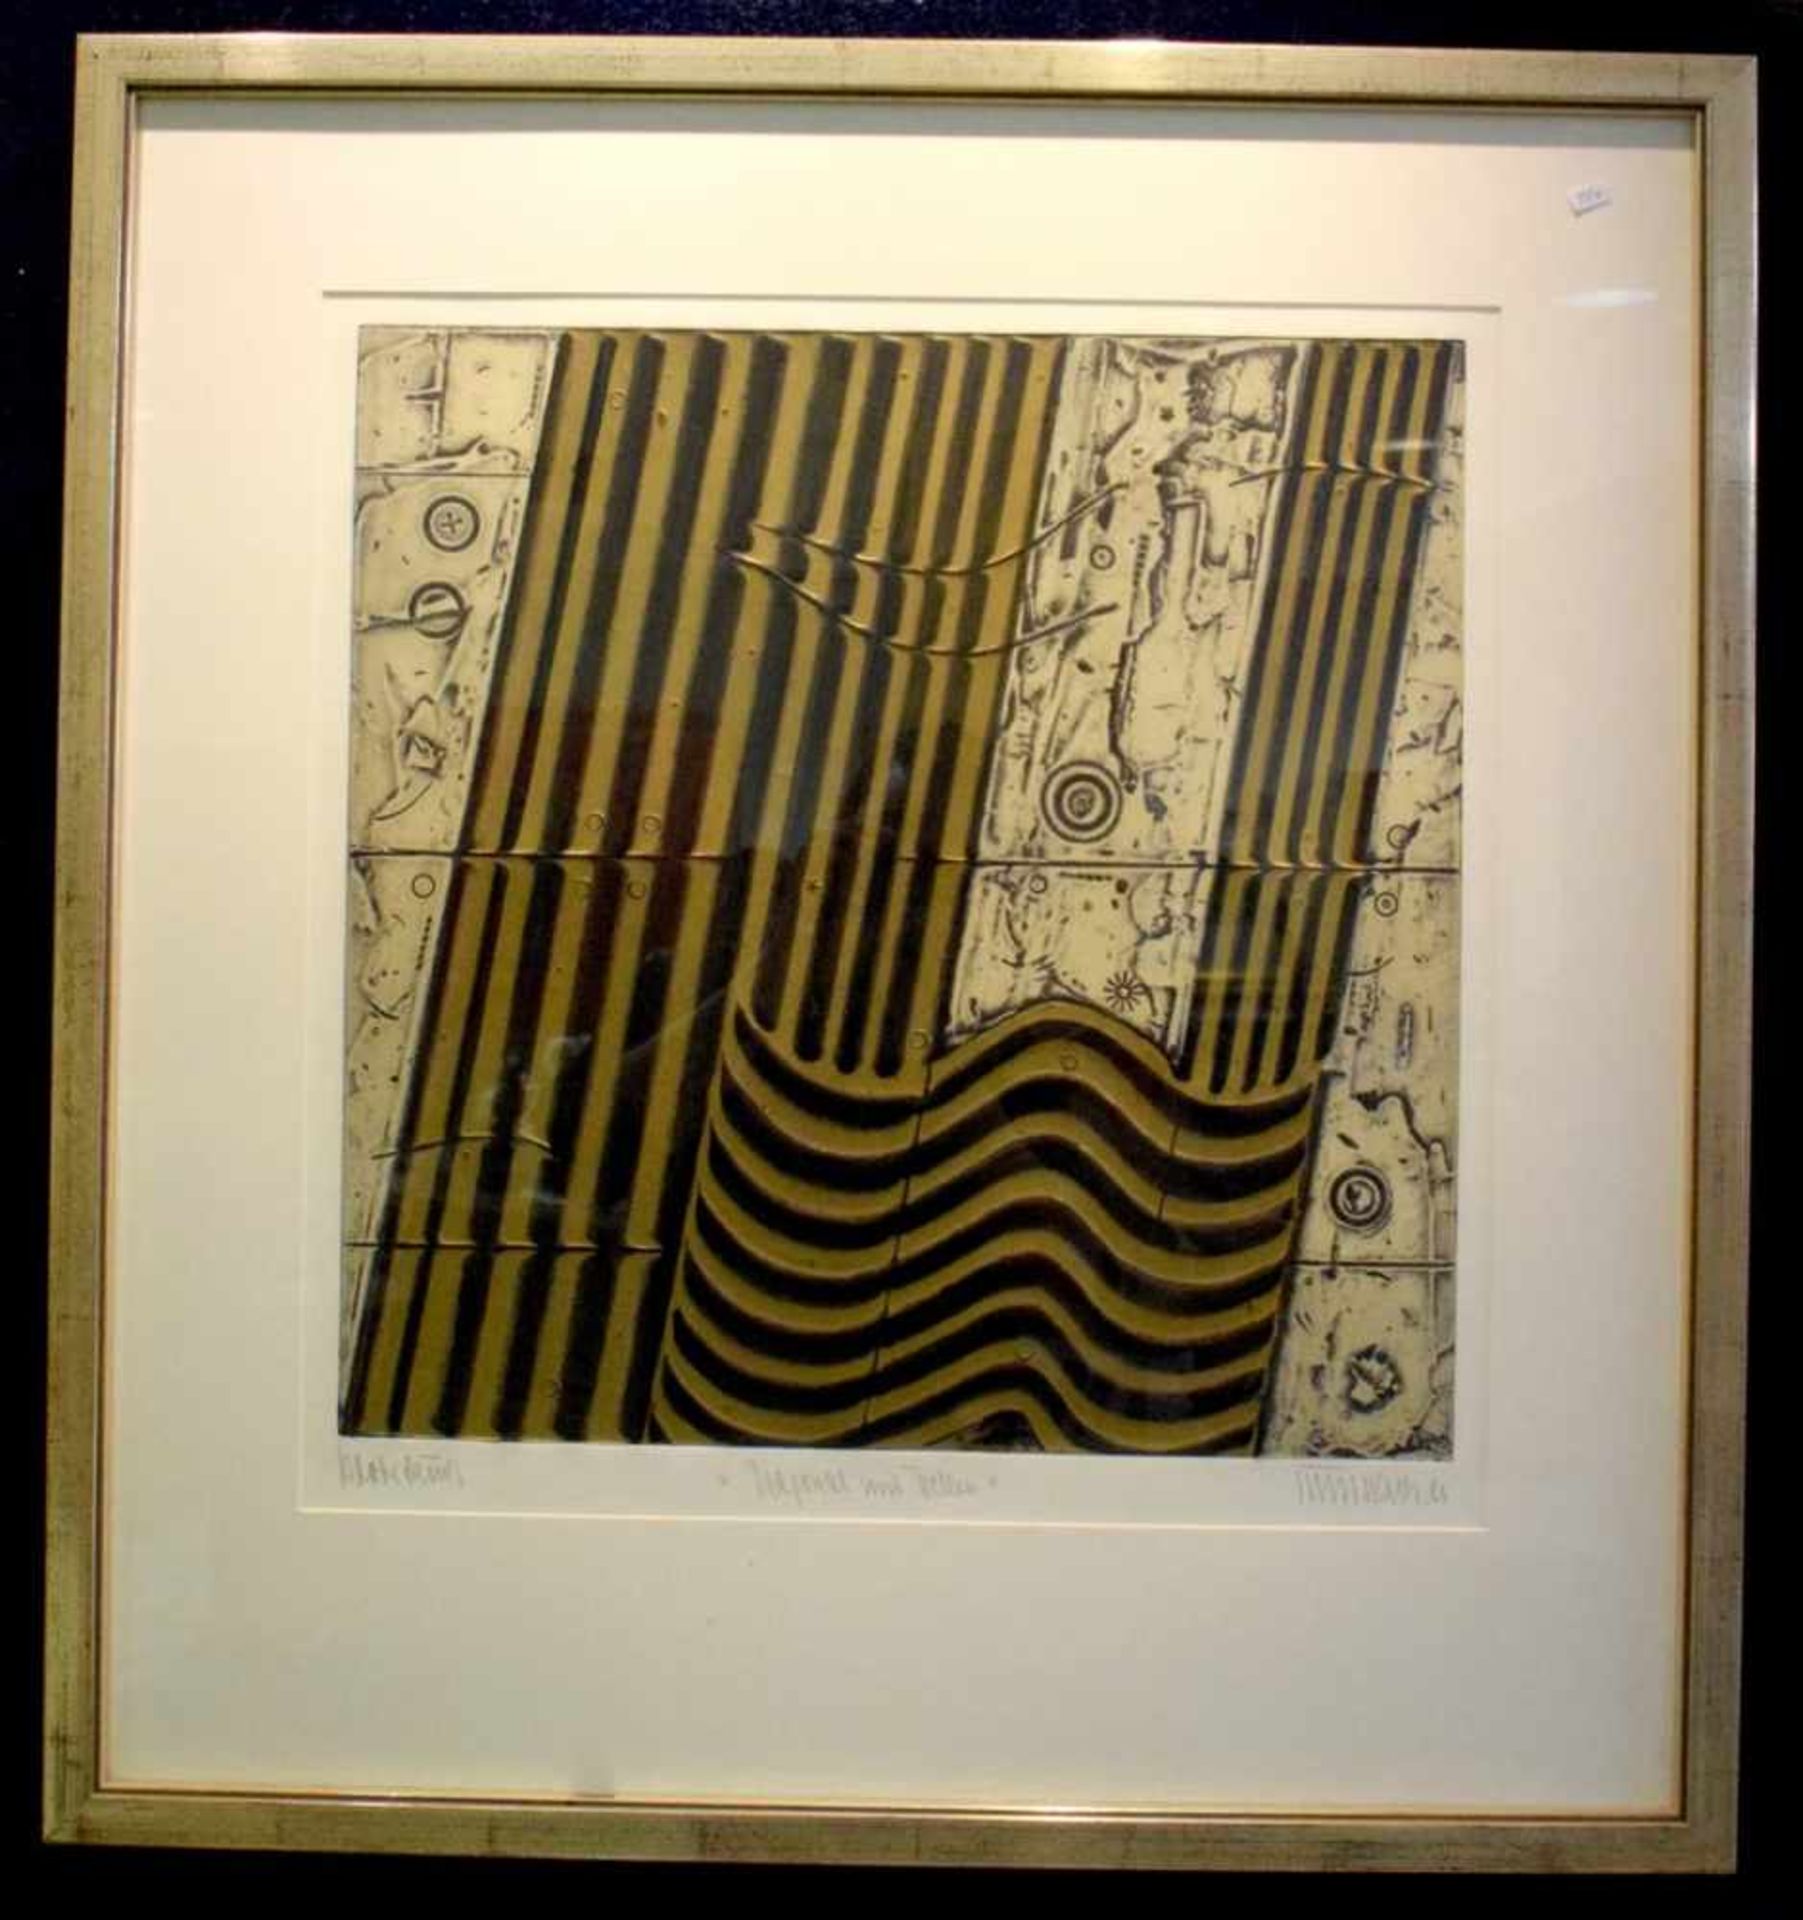 Lithografie Diagonale und Wellen, u.r.sign. und dat. 1980, 48 X 50 cm, im silberfarbenen Rahmen